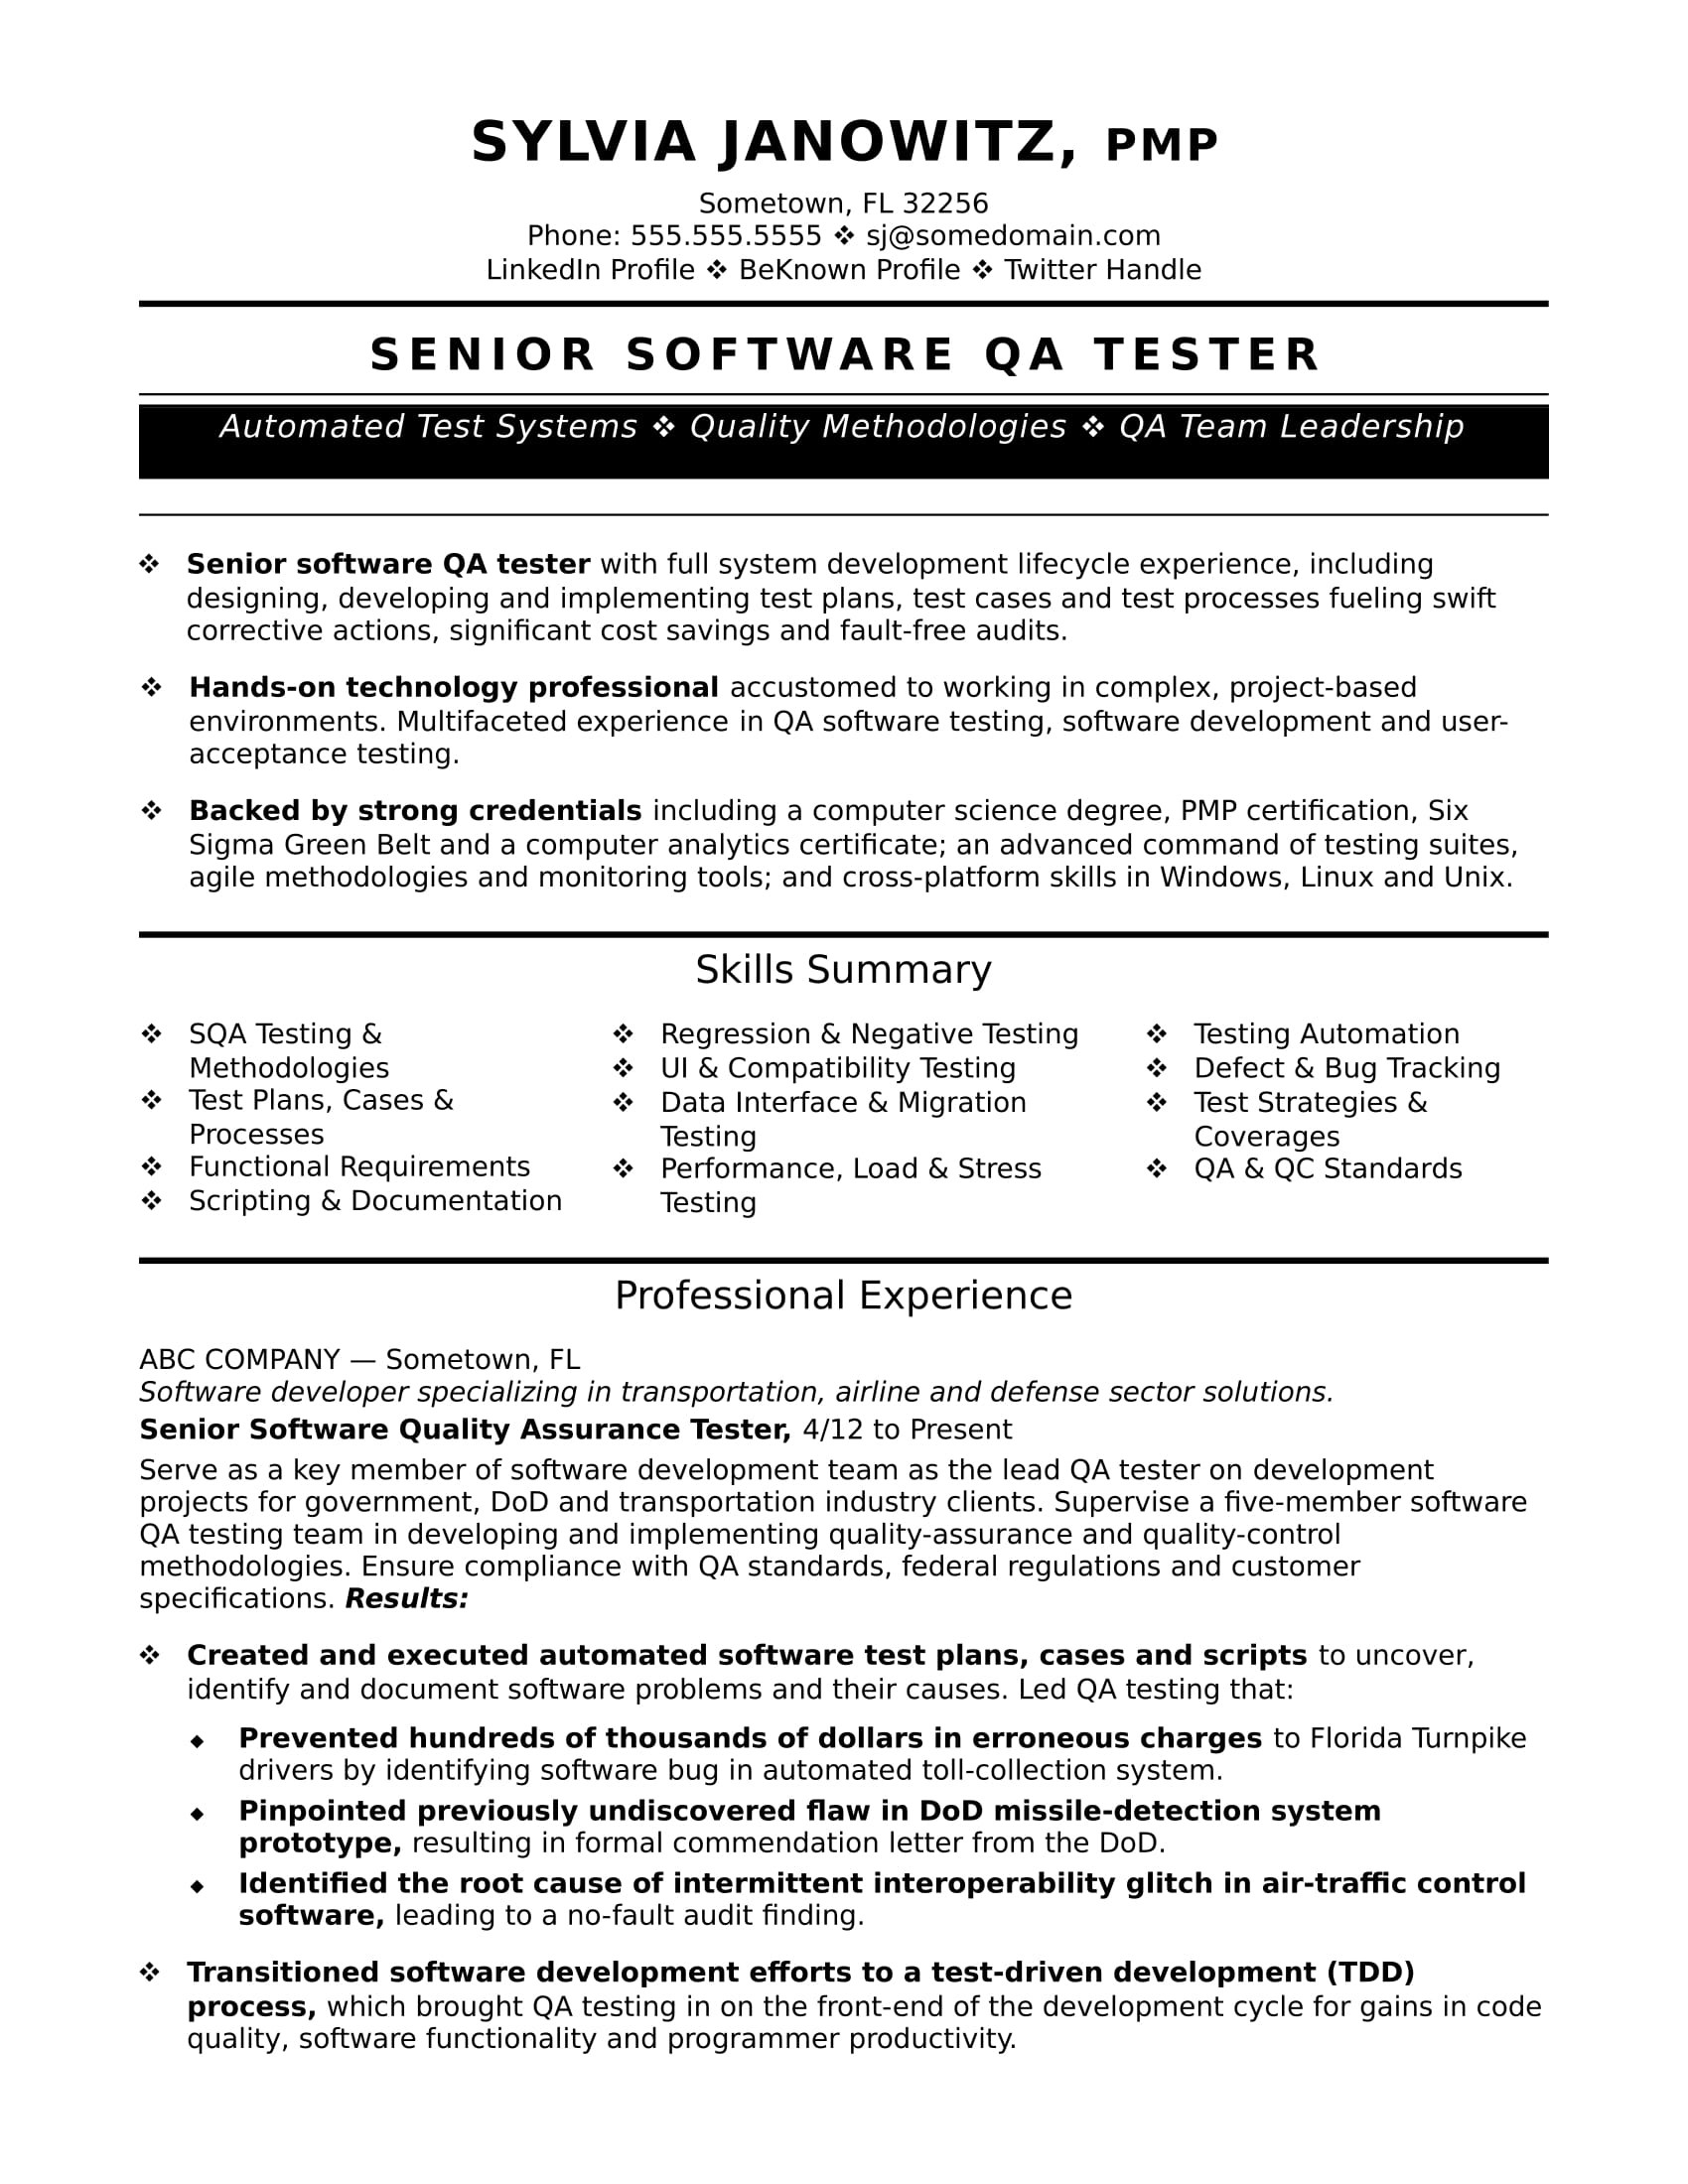 Senior Agile Qa Tester Sample Resume Experienced Qa software Tester Resume Sample Monster.com